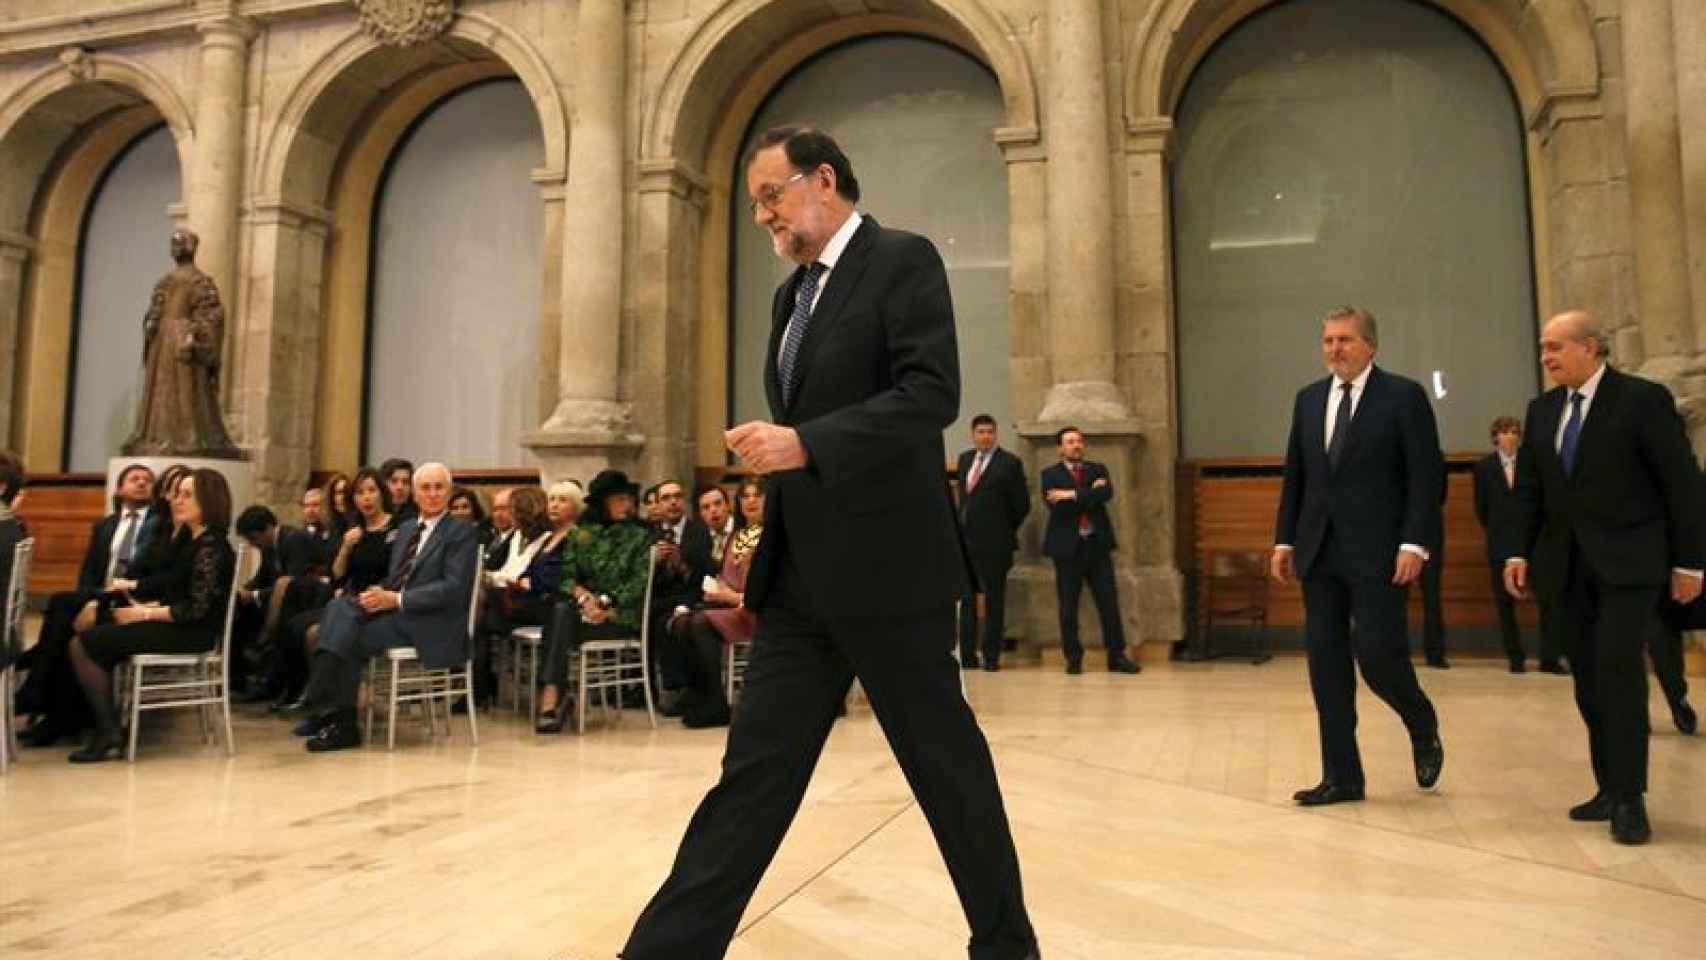 El presidente del Gobierno en funciones, Mariano Rajoy, este jueves en el Prado